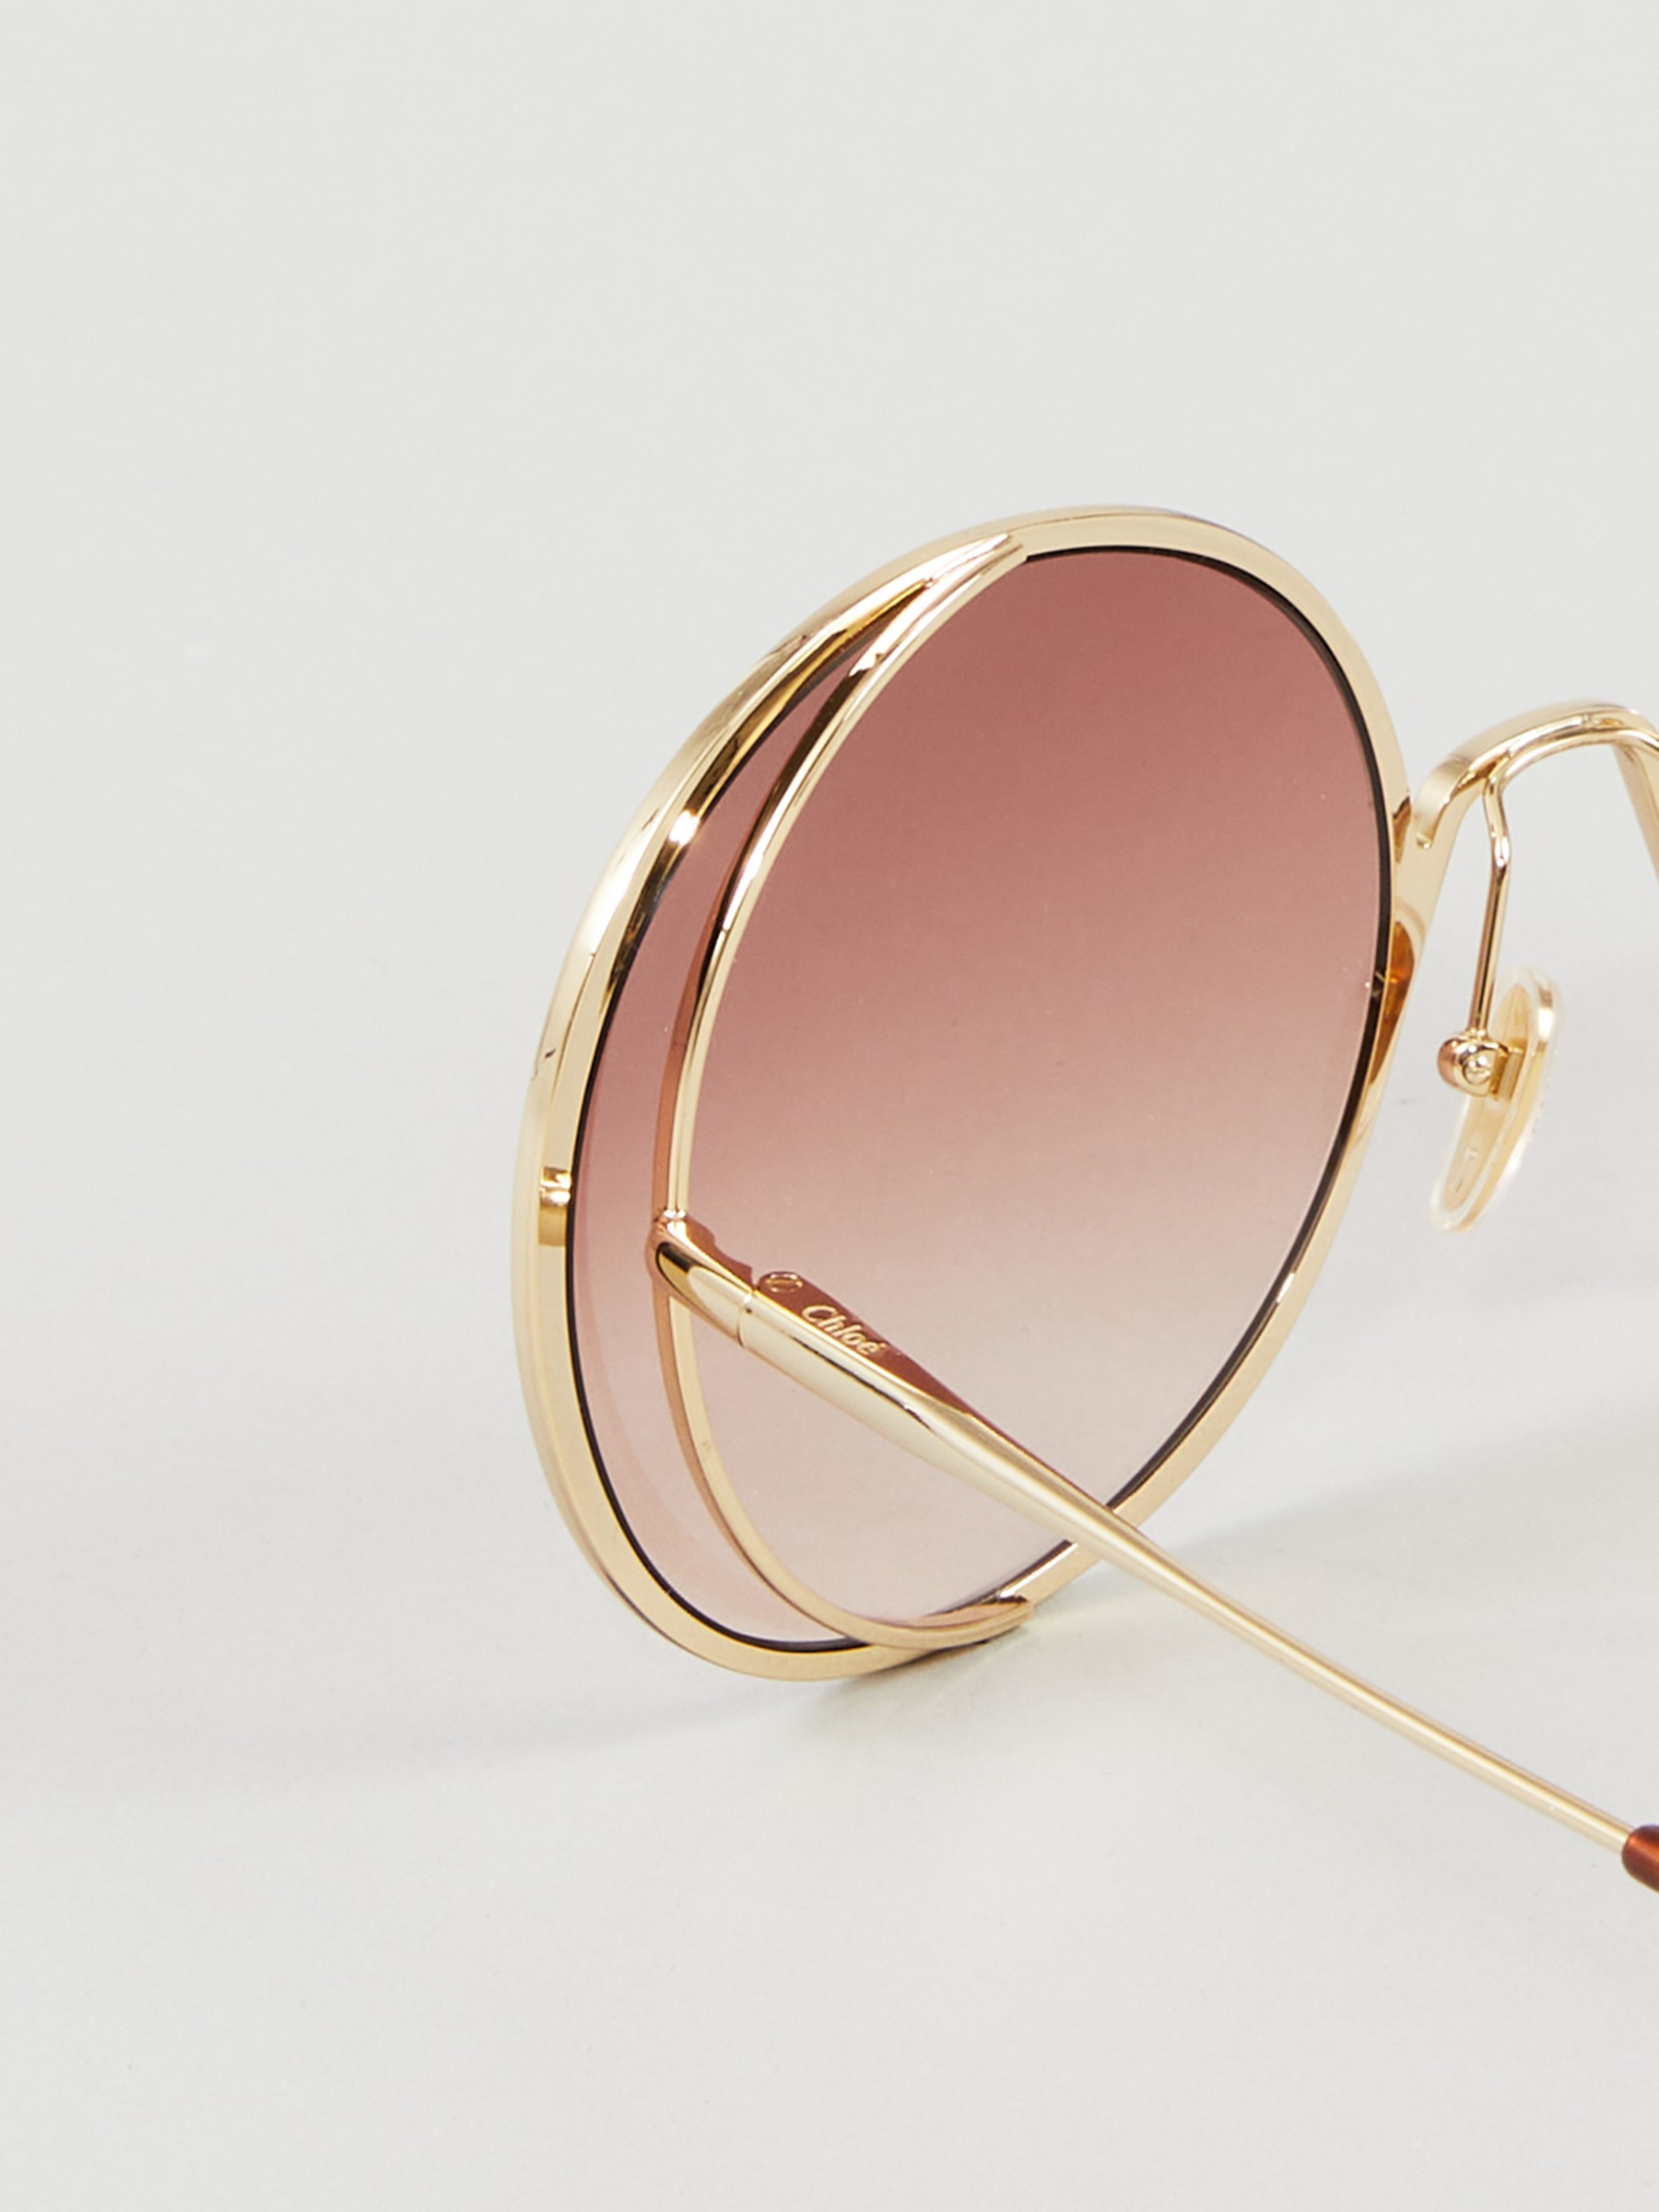 Loaded Tilsyneladende Meander Chloé Sunglasses 'Hanah' Rose/Gold | Solbriller